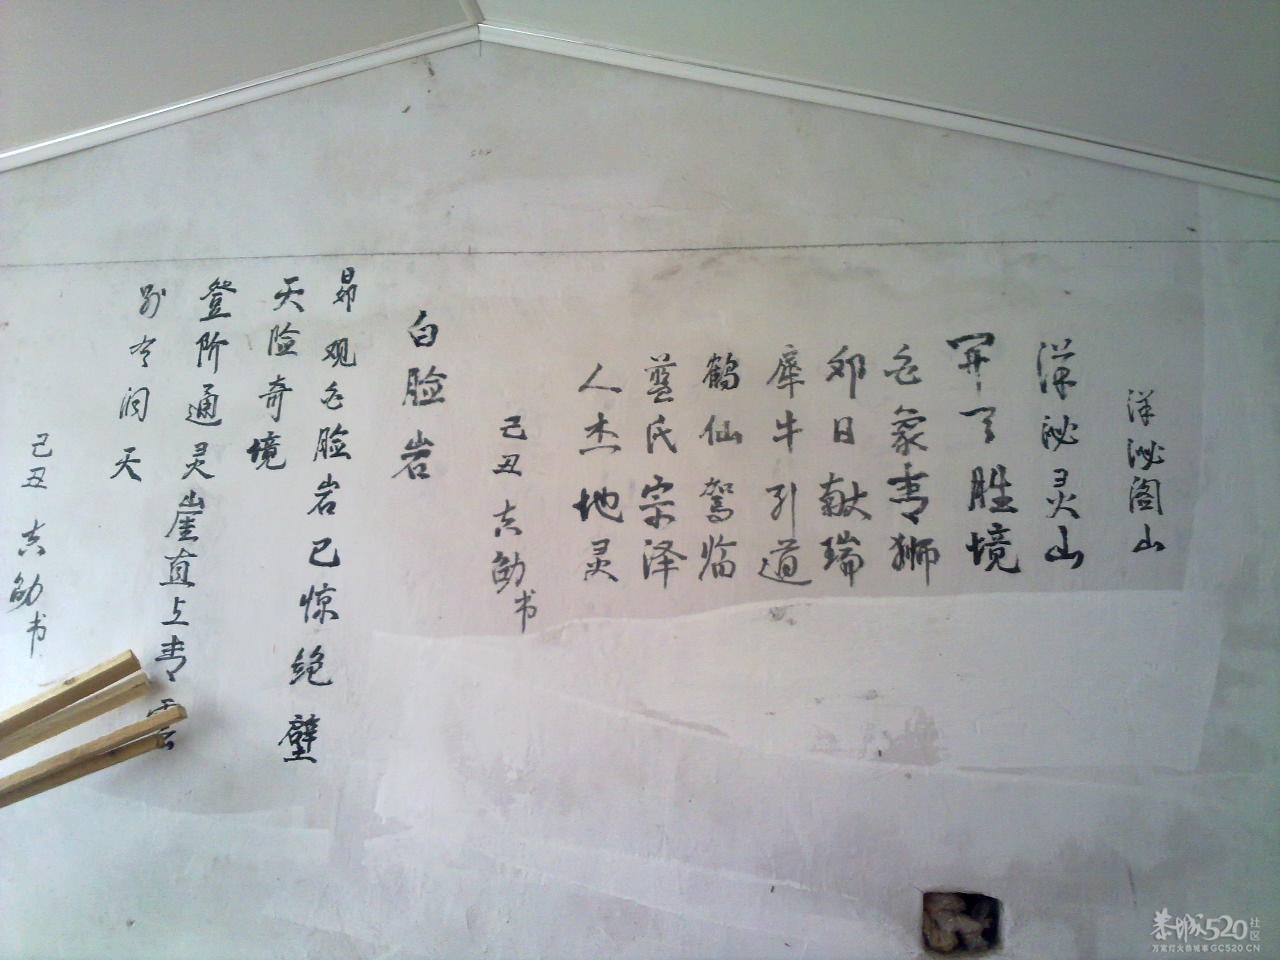 在邓扒村一间民房墙上拍到的诗词264 / 作者:金网 / 帖子ID:11390